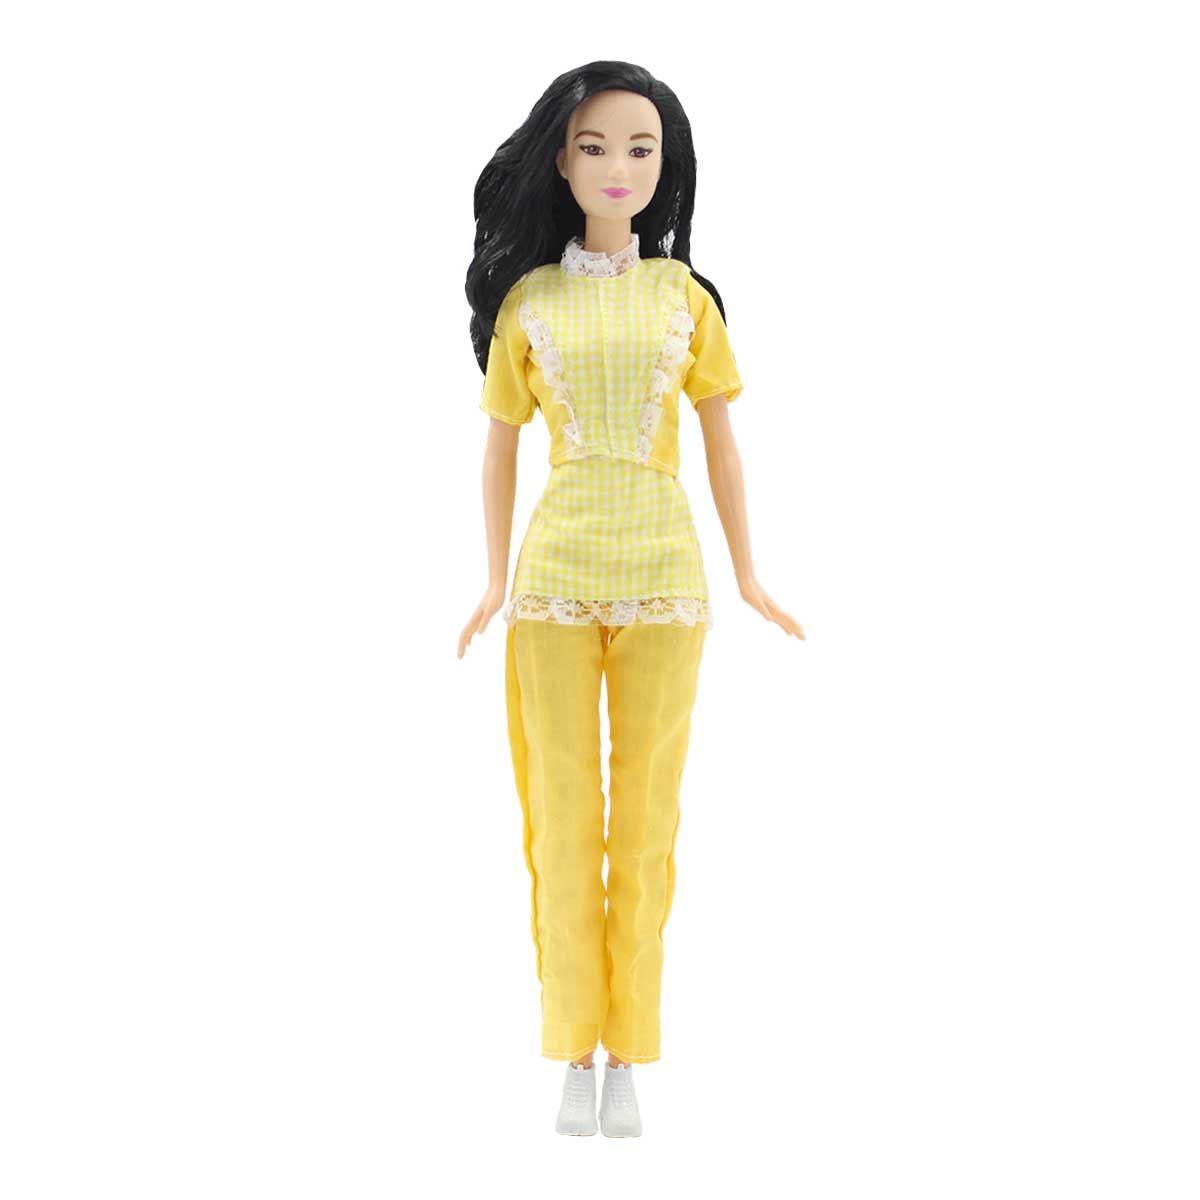 Одежда Dolls Accessories для Барби и других кукол 29 см Горничная желтый староста горничная том 6